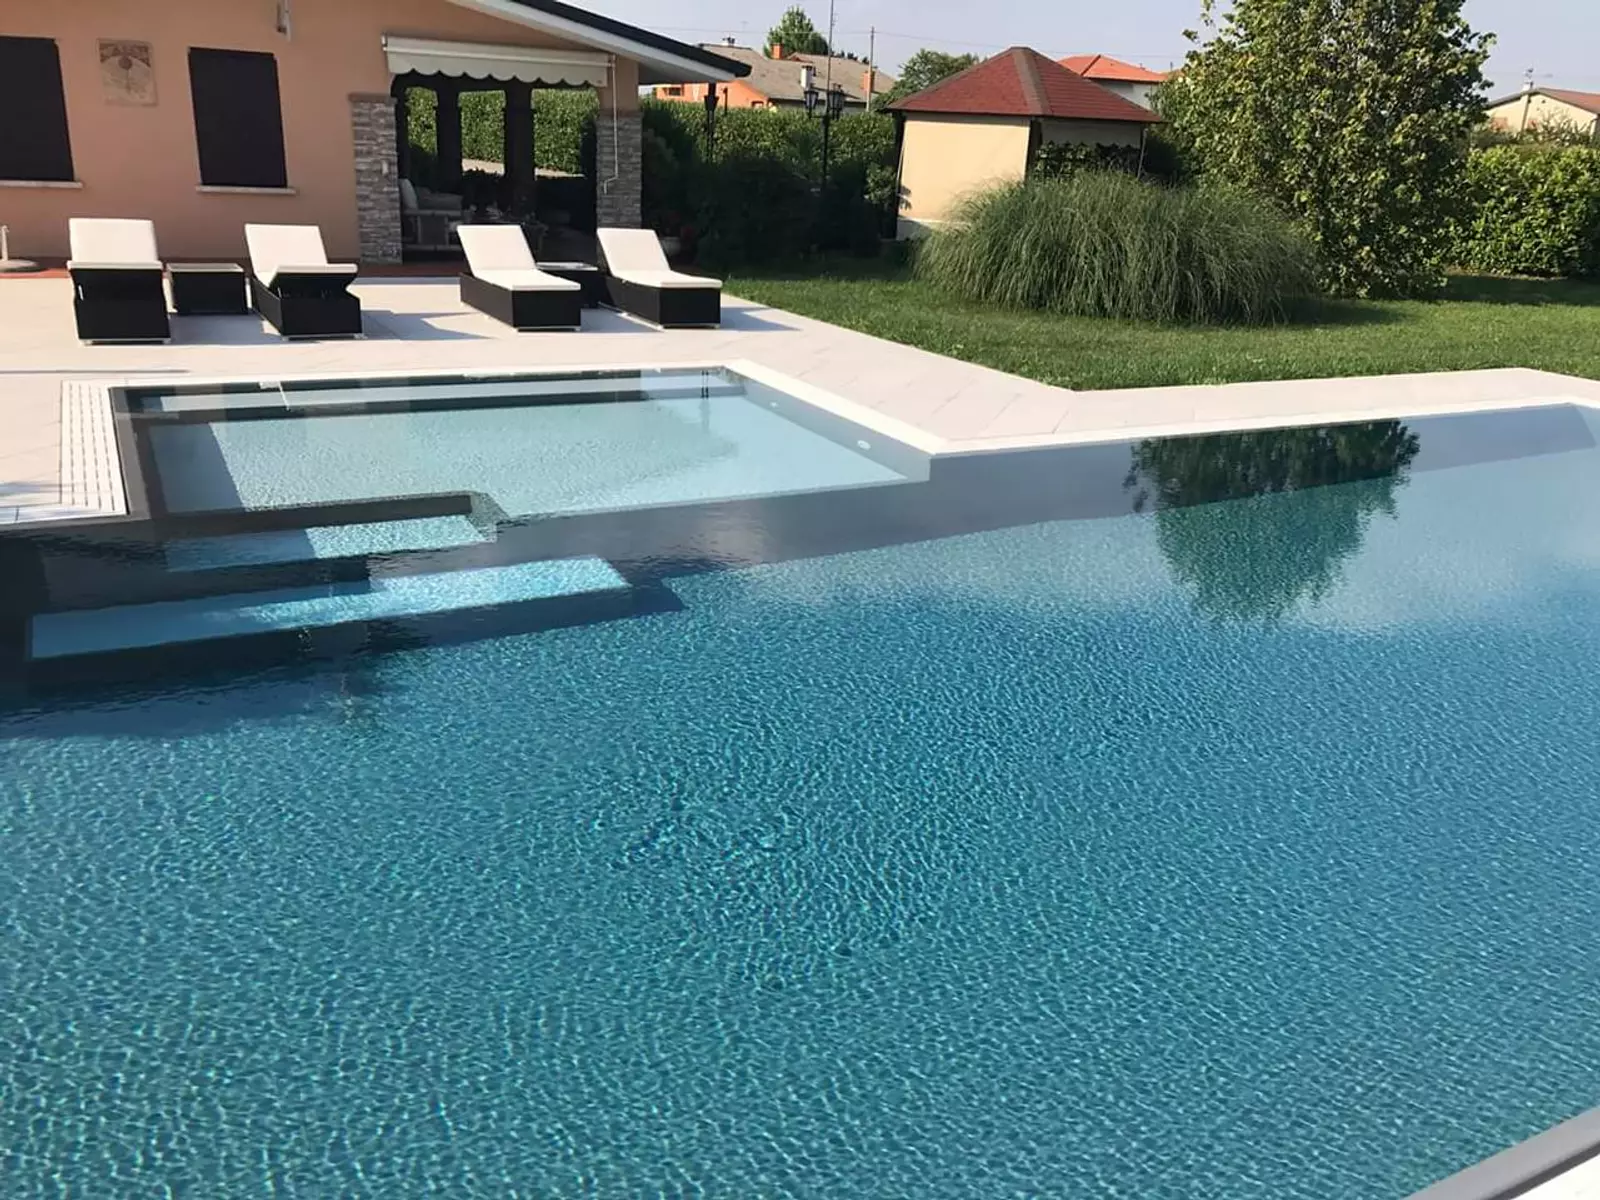 Bazénová fólia Sopremapool Premium - Basalt Grey 1,5mm